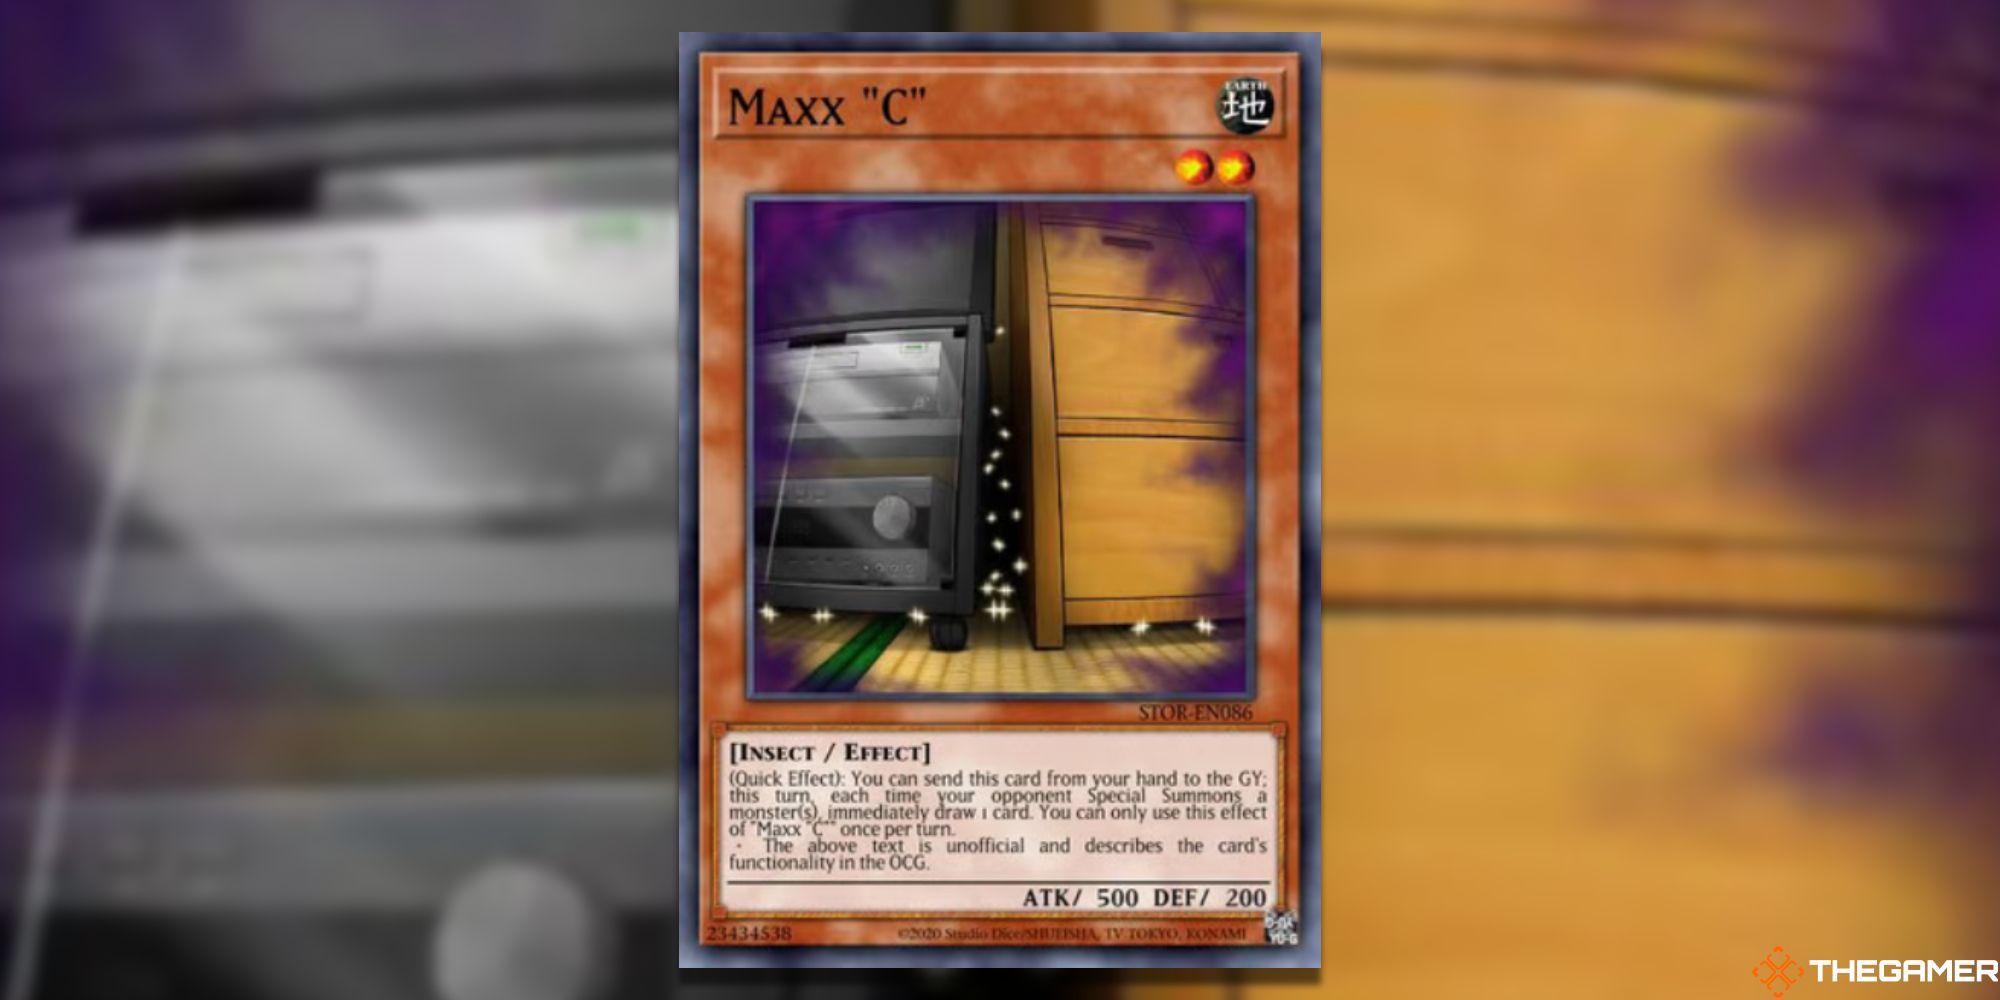 Yu-Gi-Oh! Maxx "C" on blurred background